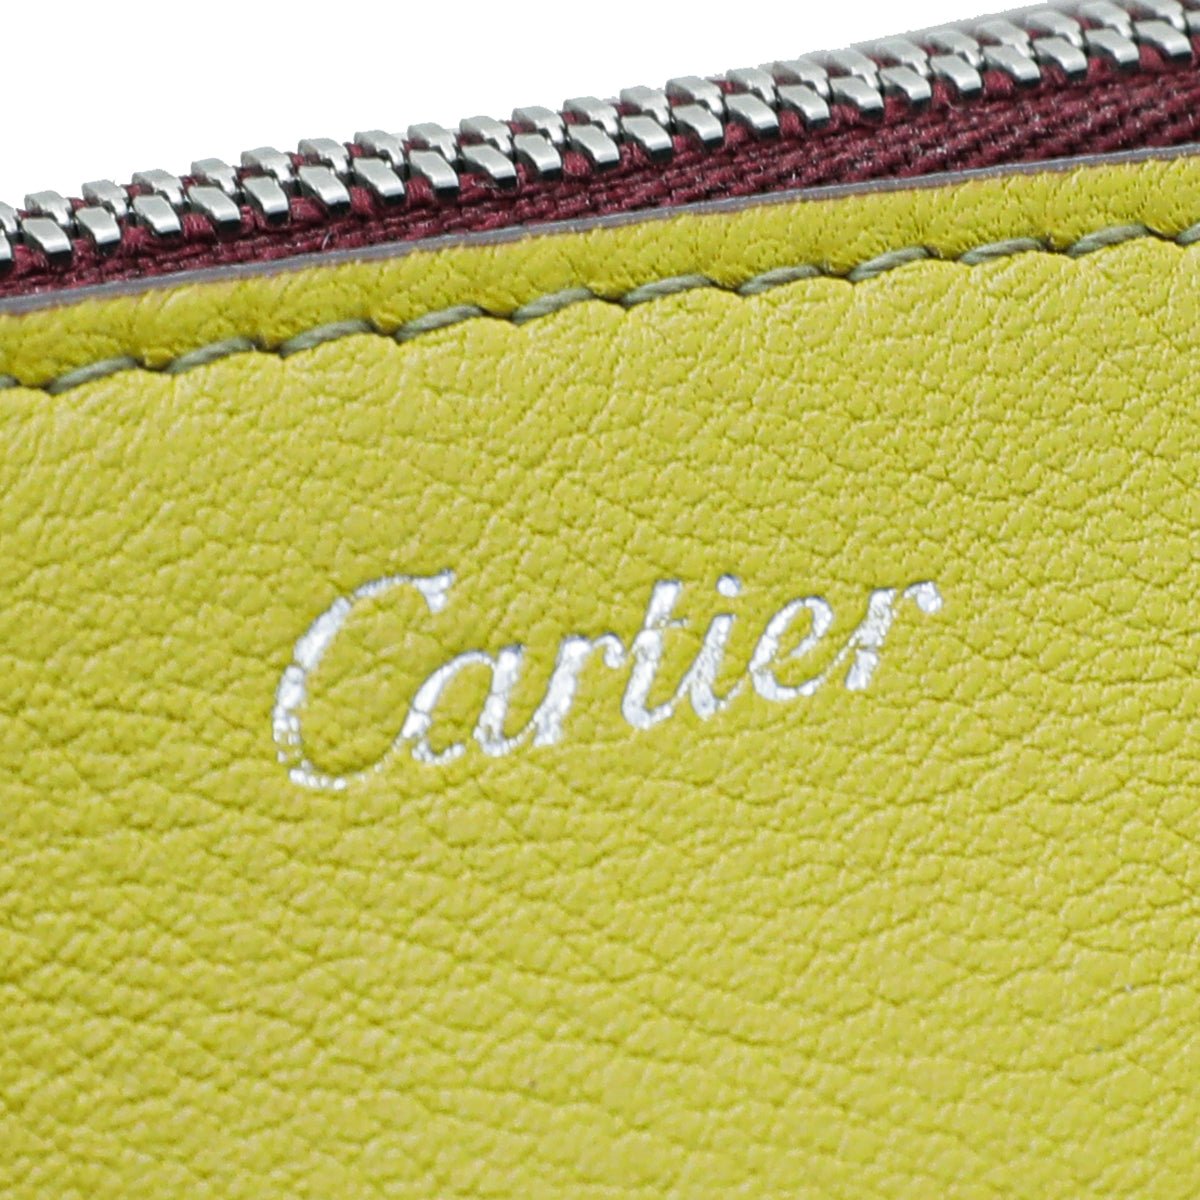 Cartier - Cartier Bicolor C De Cartier Bag | The Closet